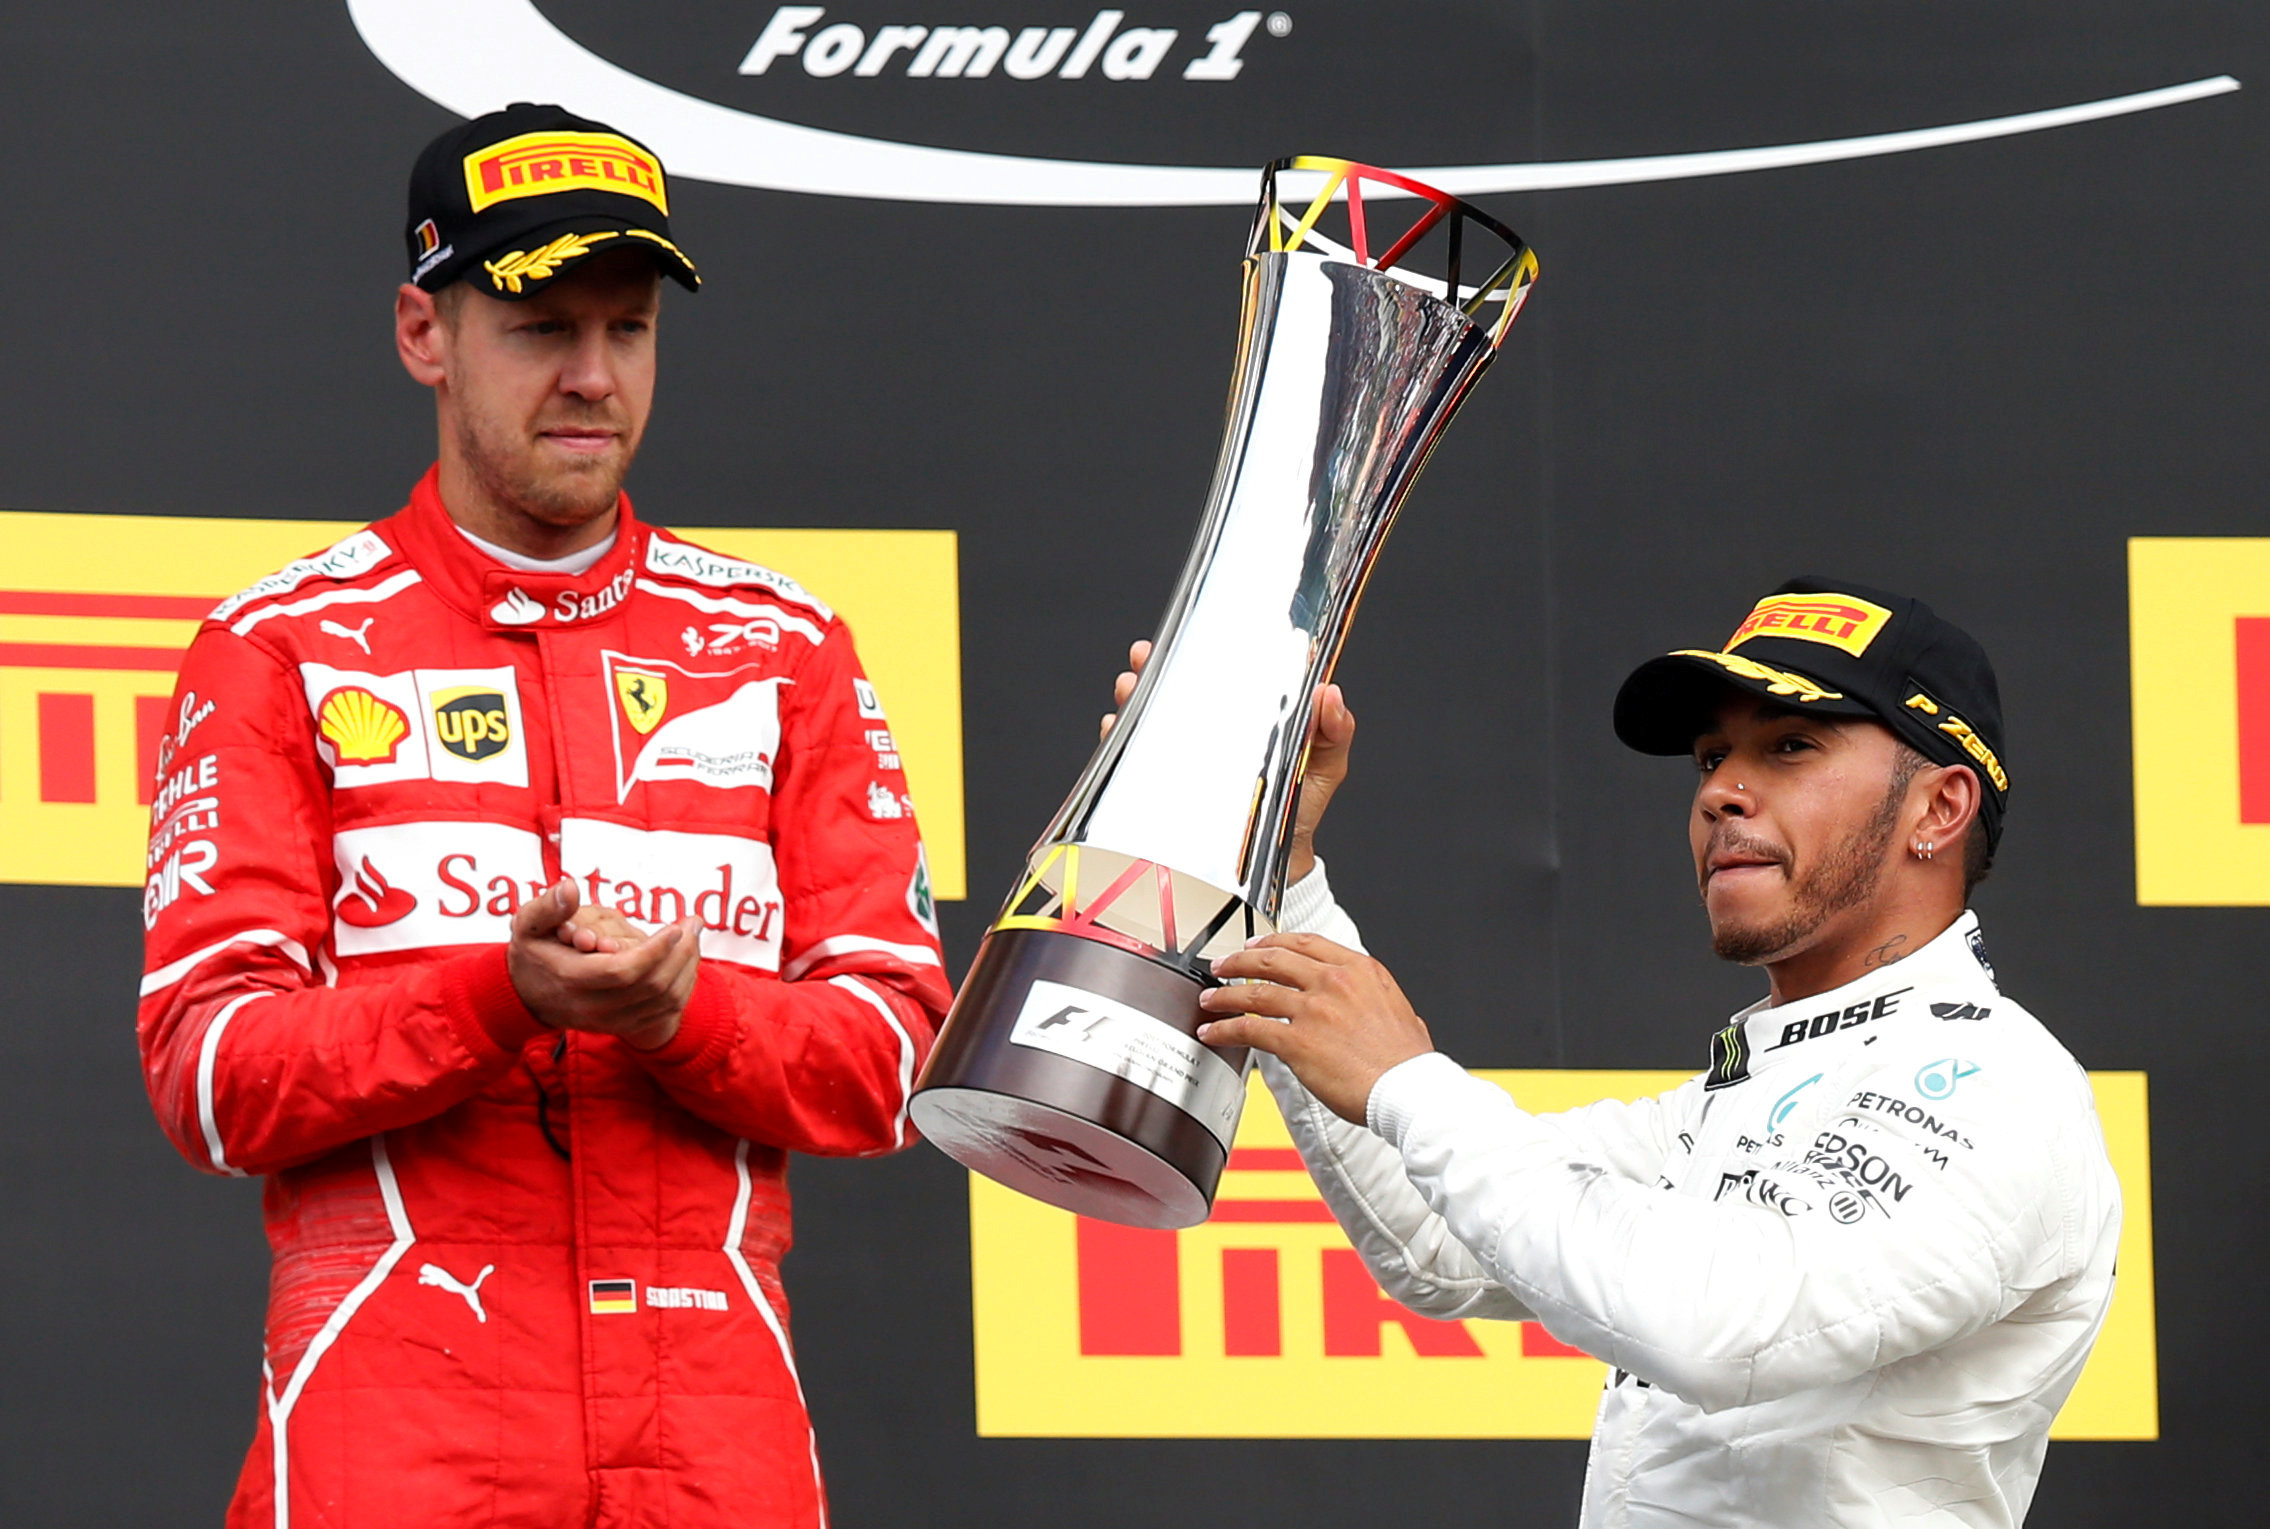 Vettel y Hamilton pugnan por un título imposible para el tercero más laureado